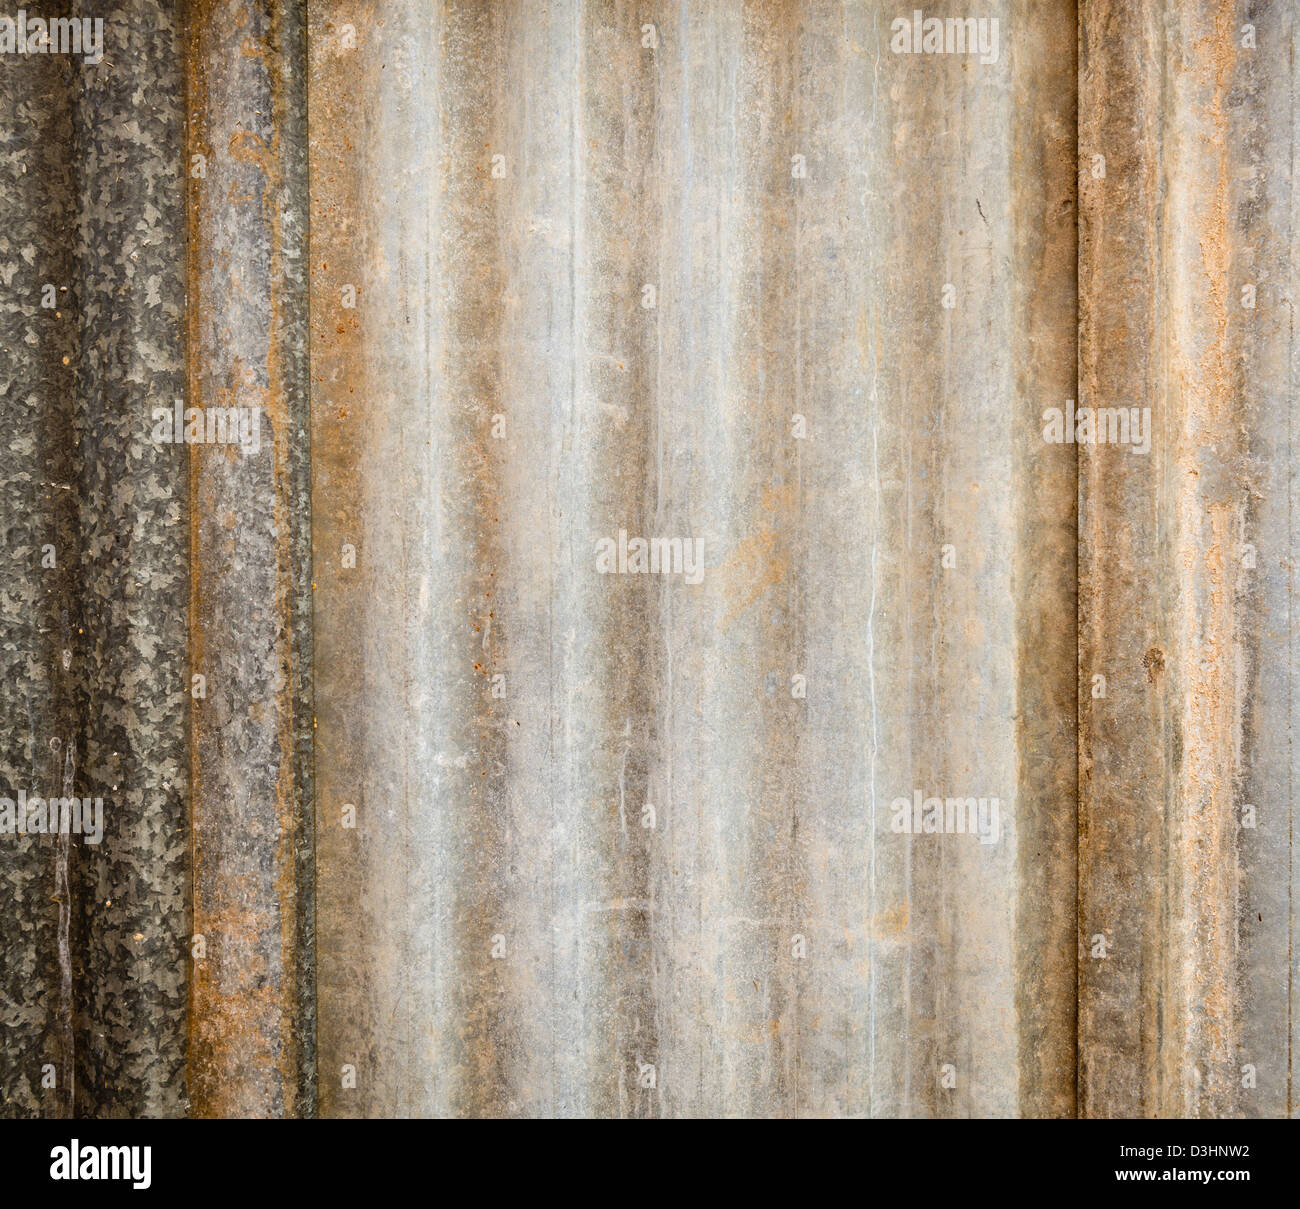 Hintergrundtextur aus Wellblech Blättern mit Rost und Verschleiß Stockfoto